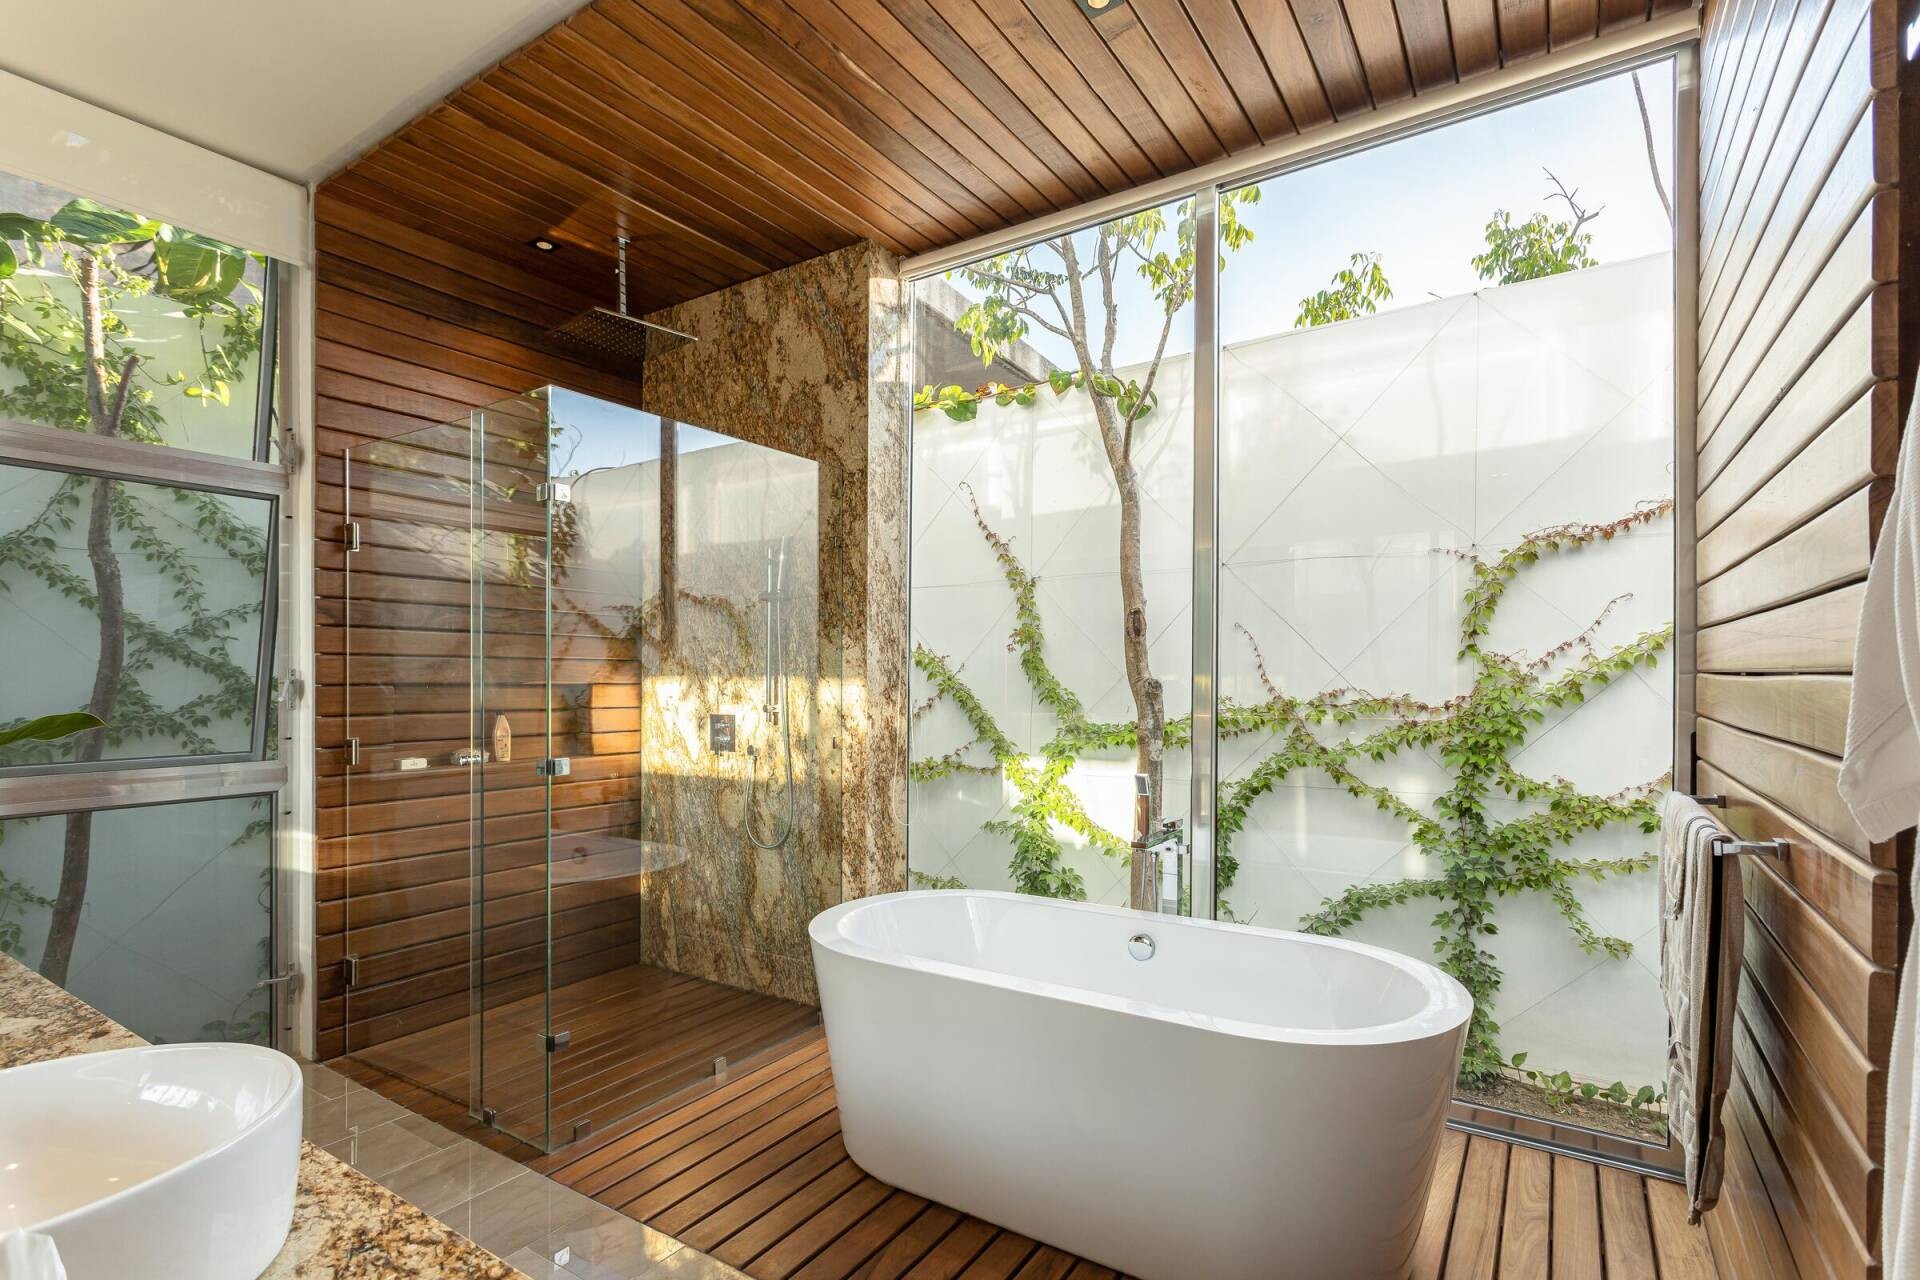 
Phòng tắm với thiết kế sang trọng, hiện đại, thiết kế mở tối đa nhưng vẫn giữ được tính kín đáo và thông sáng hiệu quả
